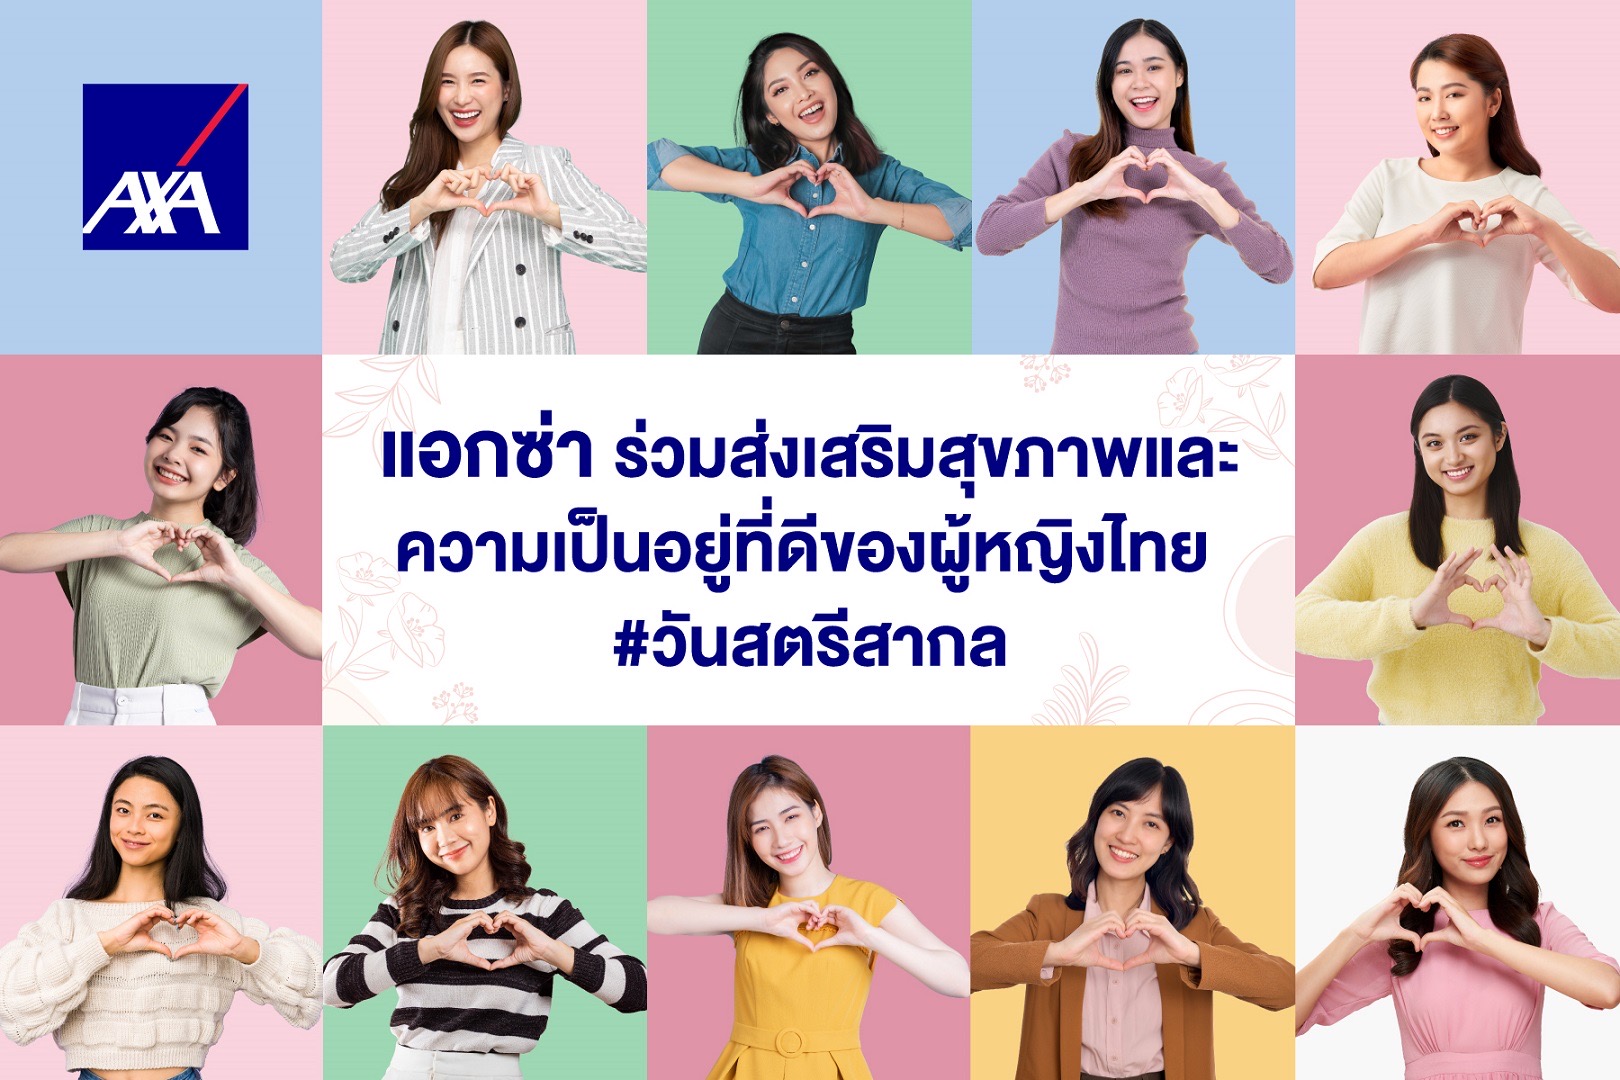 แอกซ่า ร่วมส่งเสริมสุขภาพสตรีไทย ส่งมอบแผนประกันสุขภาพ “สมาร์ทแคร์ แคนเซอร์”ป้องกันความเสี่ยงโรคร้ายแรงเพื่อผู้หญิง